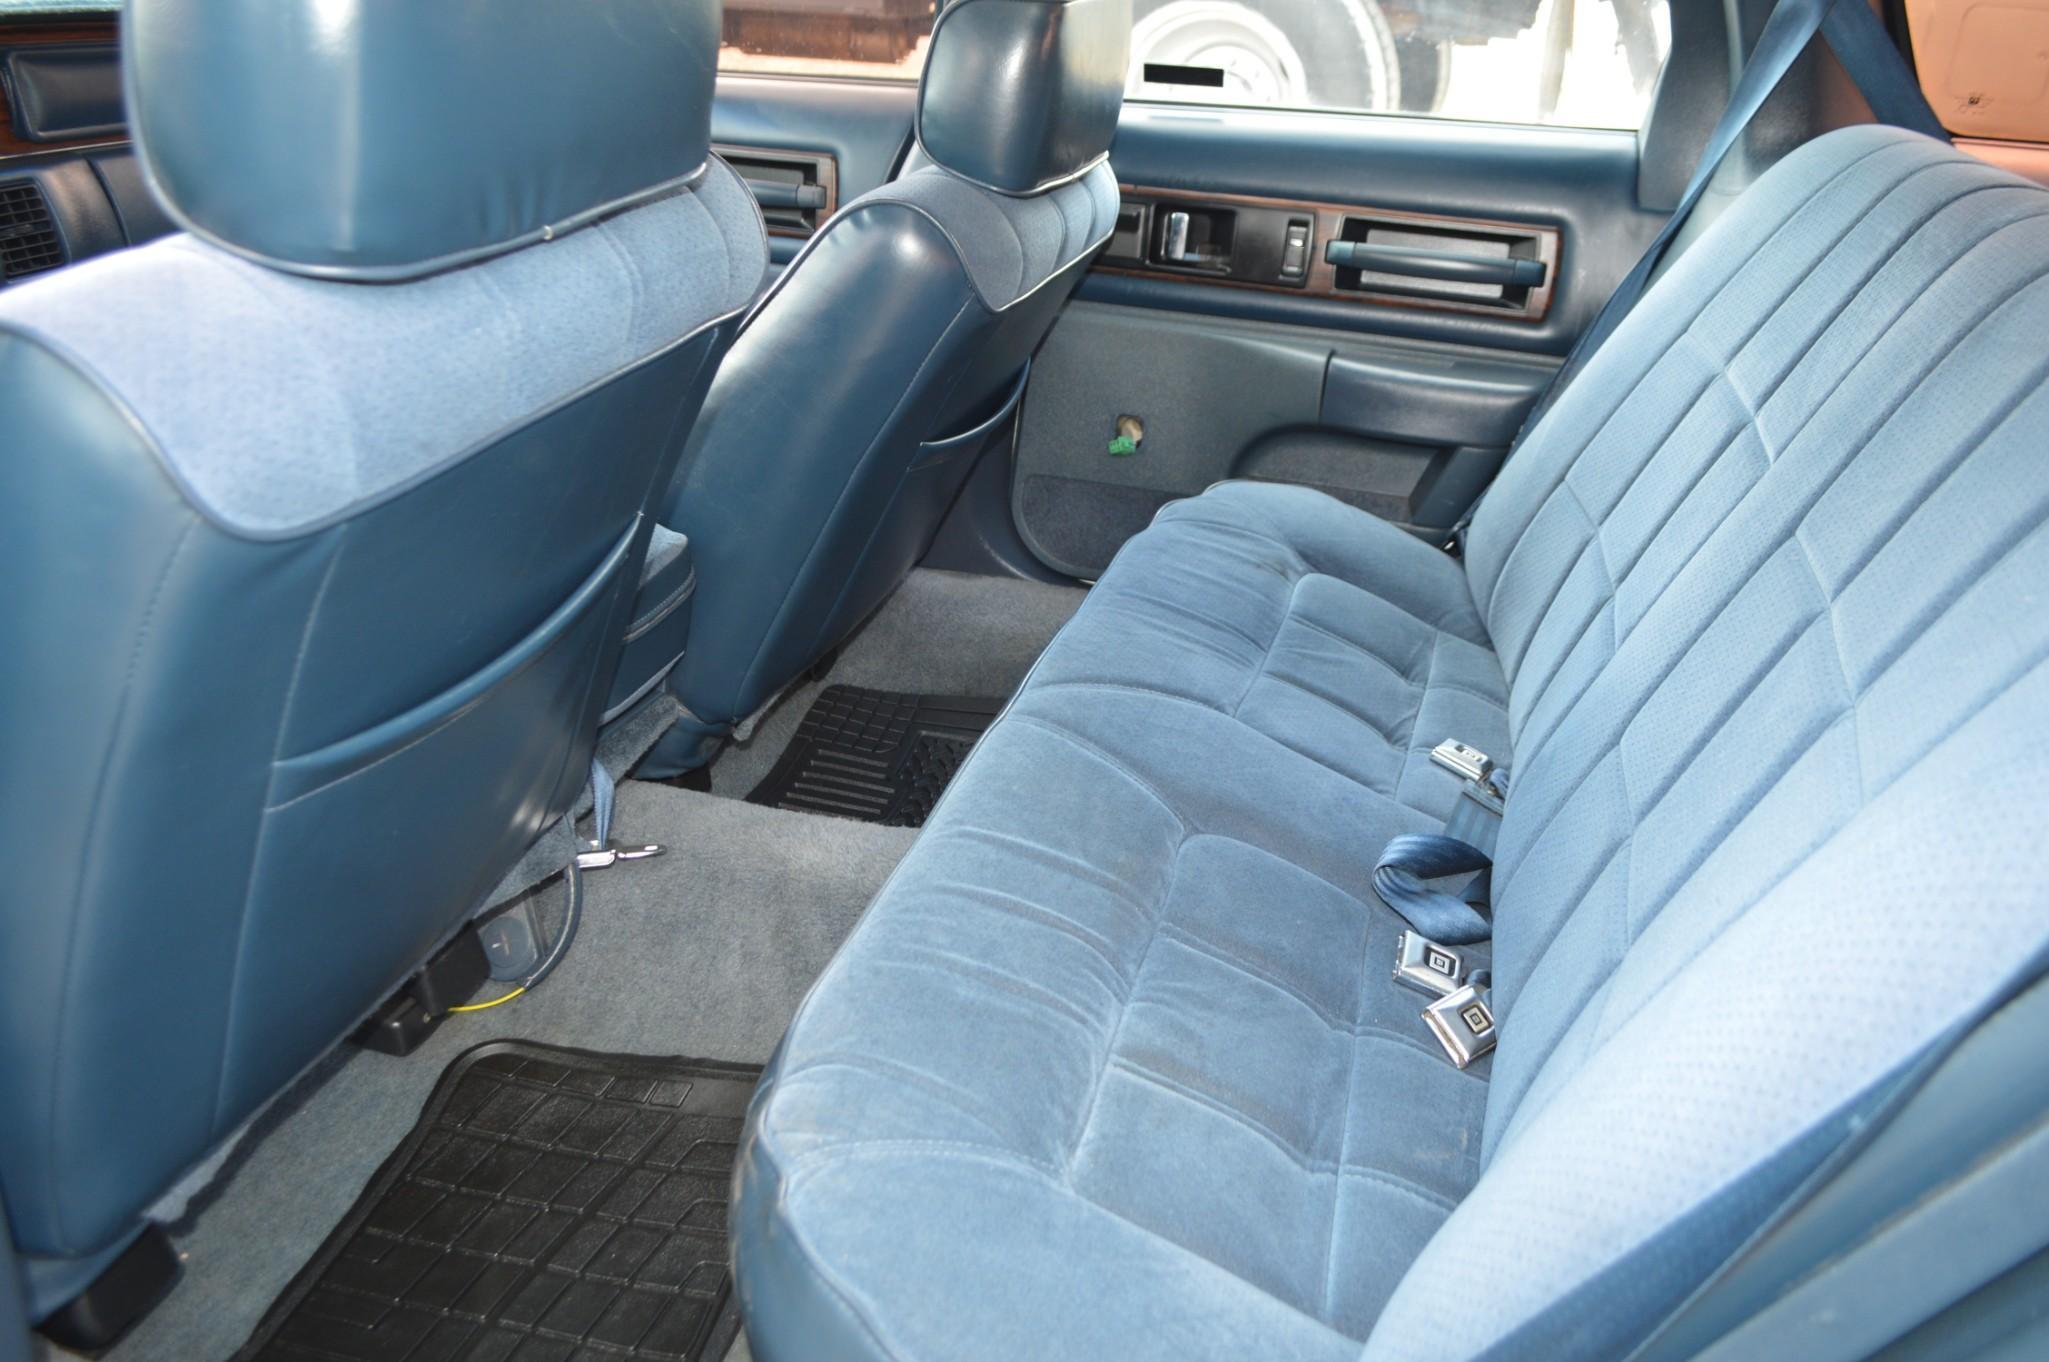 1991 Oldsmobile Custom Cruiser Passenger Car